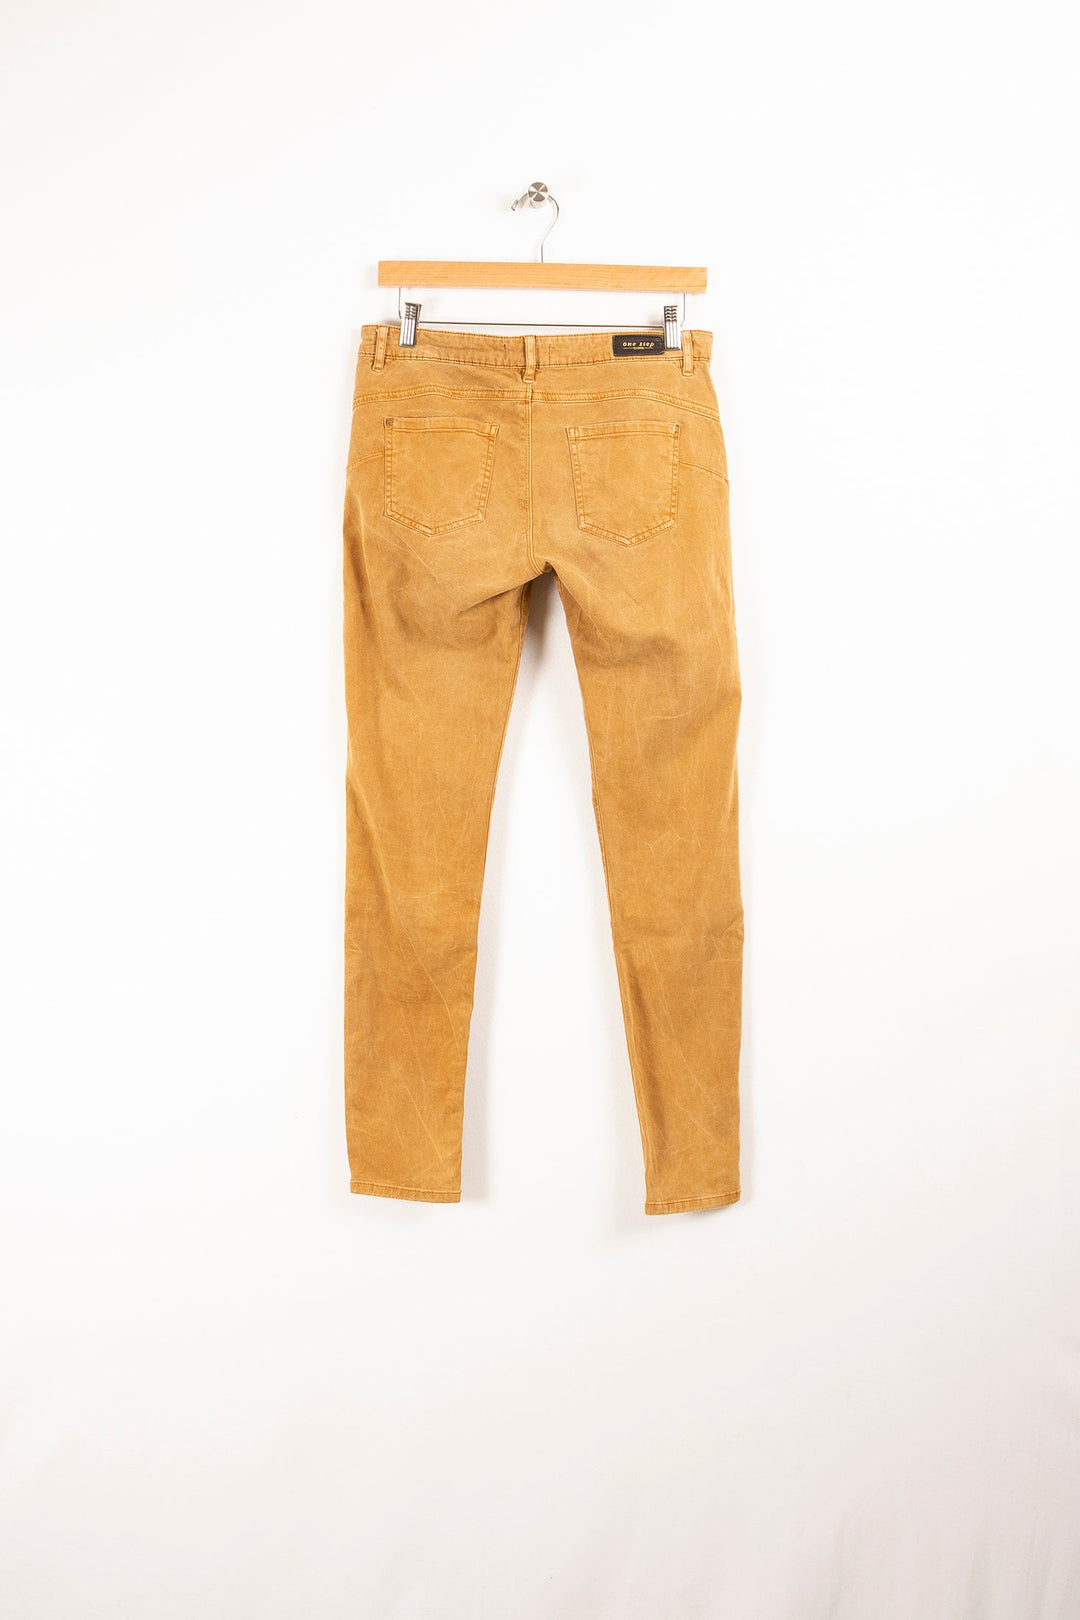 Pants - Size M/38